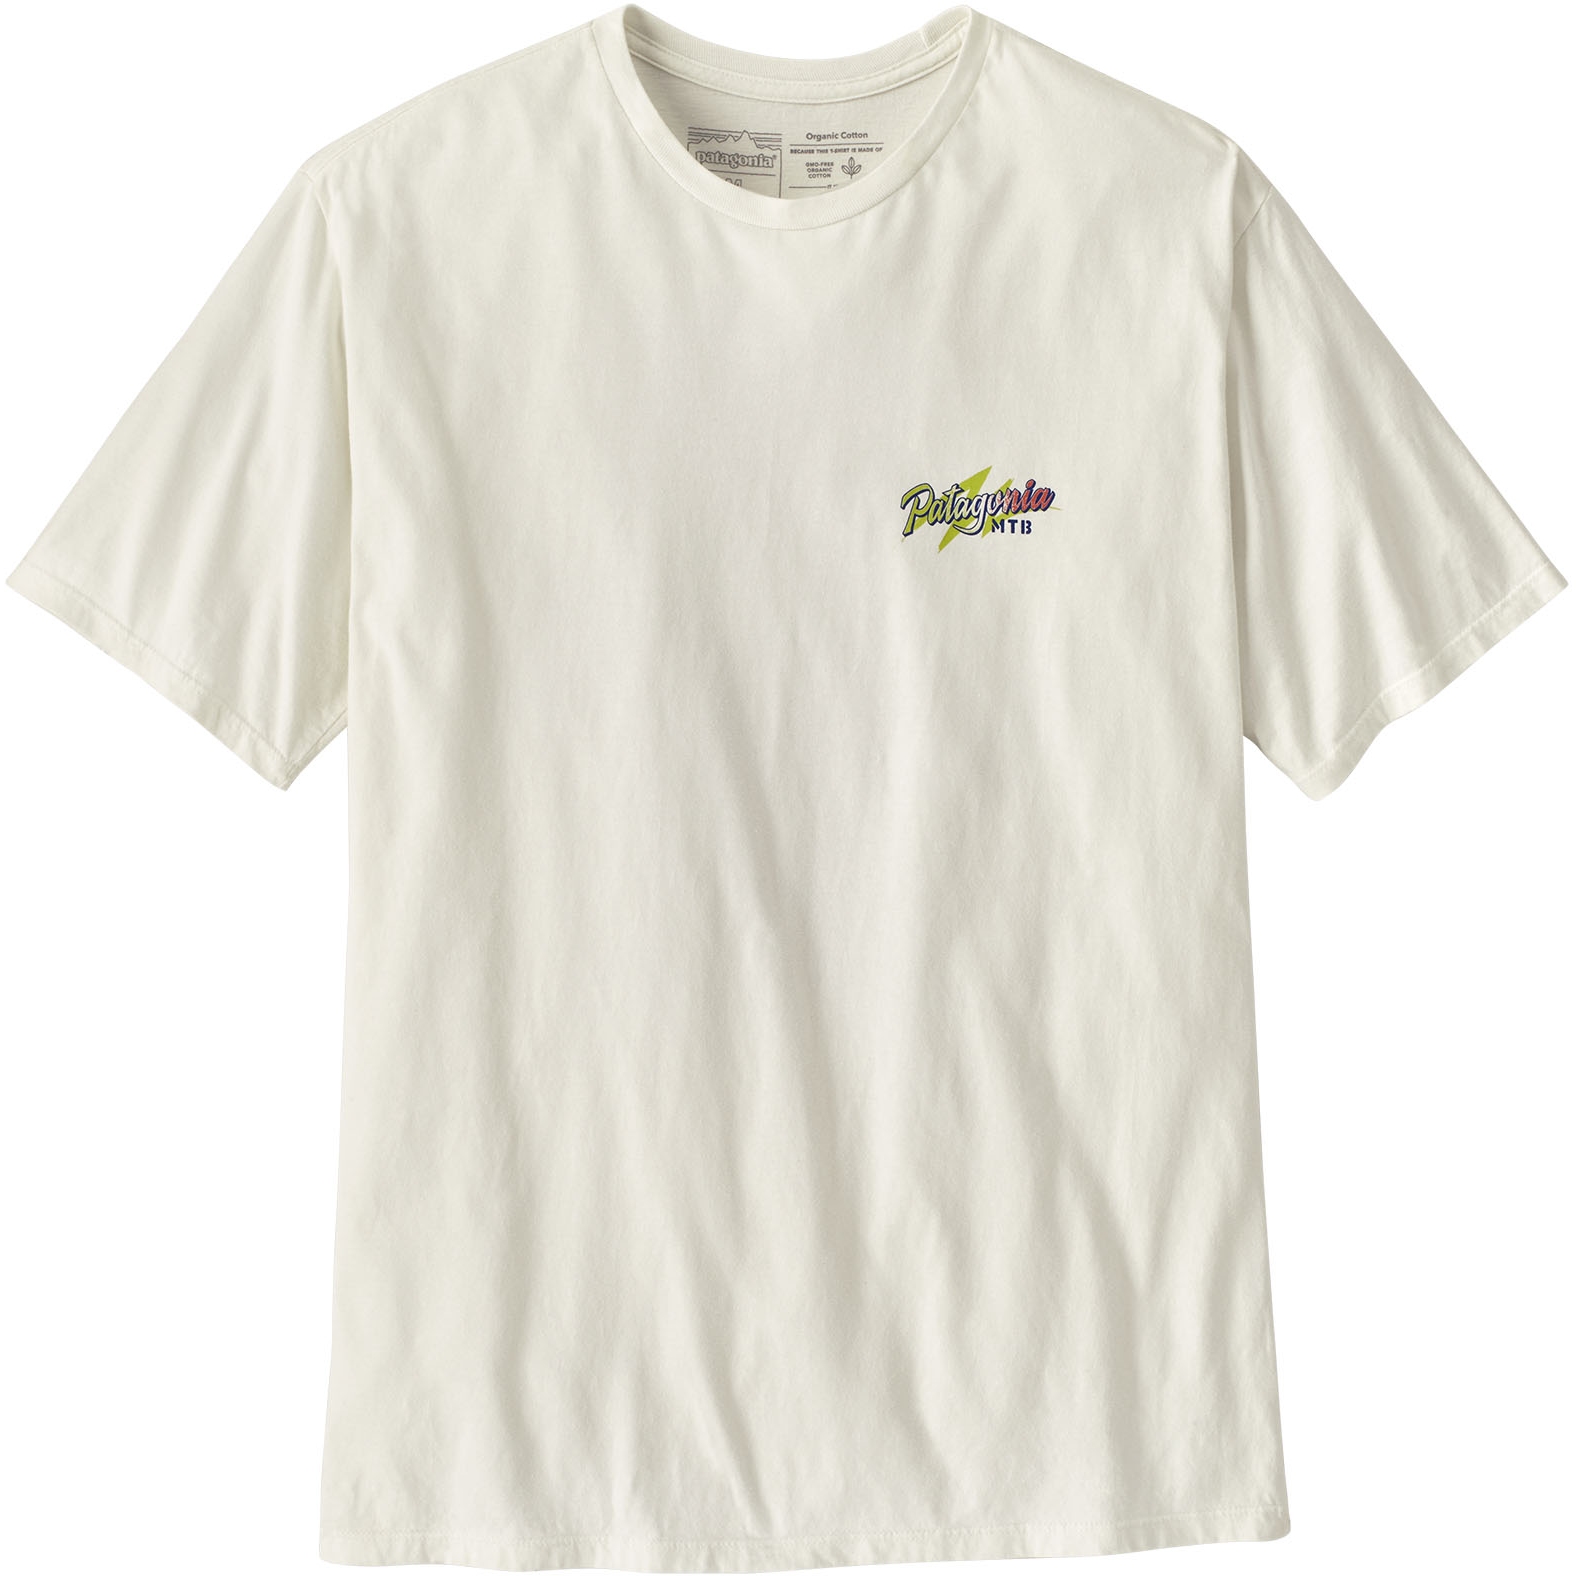 Produktbild von Patagonia Trail Hound Organic T-Shirt Herren - Birch White